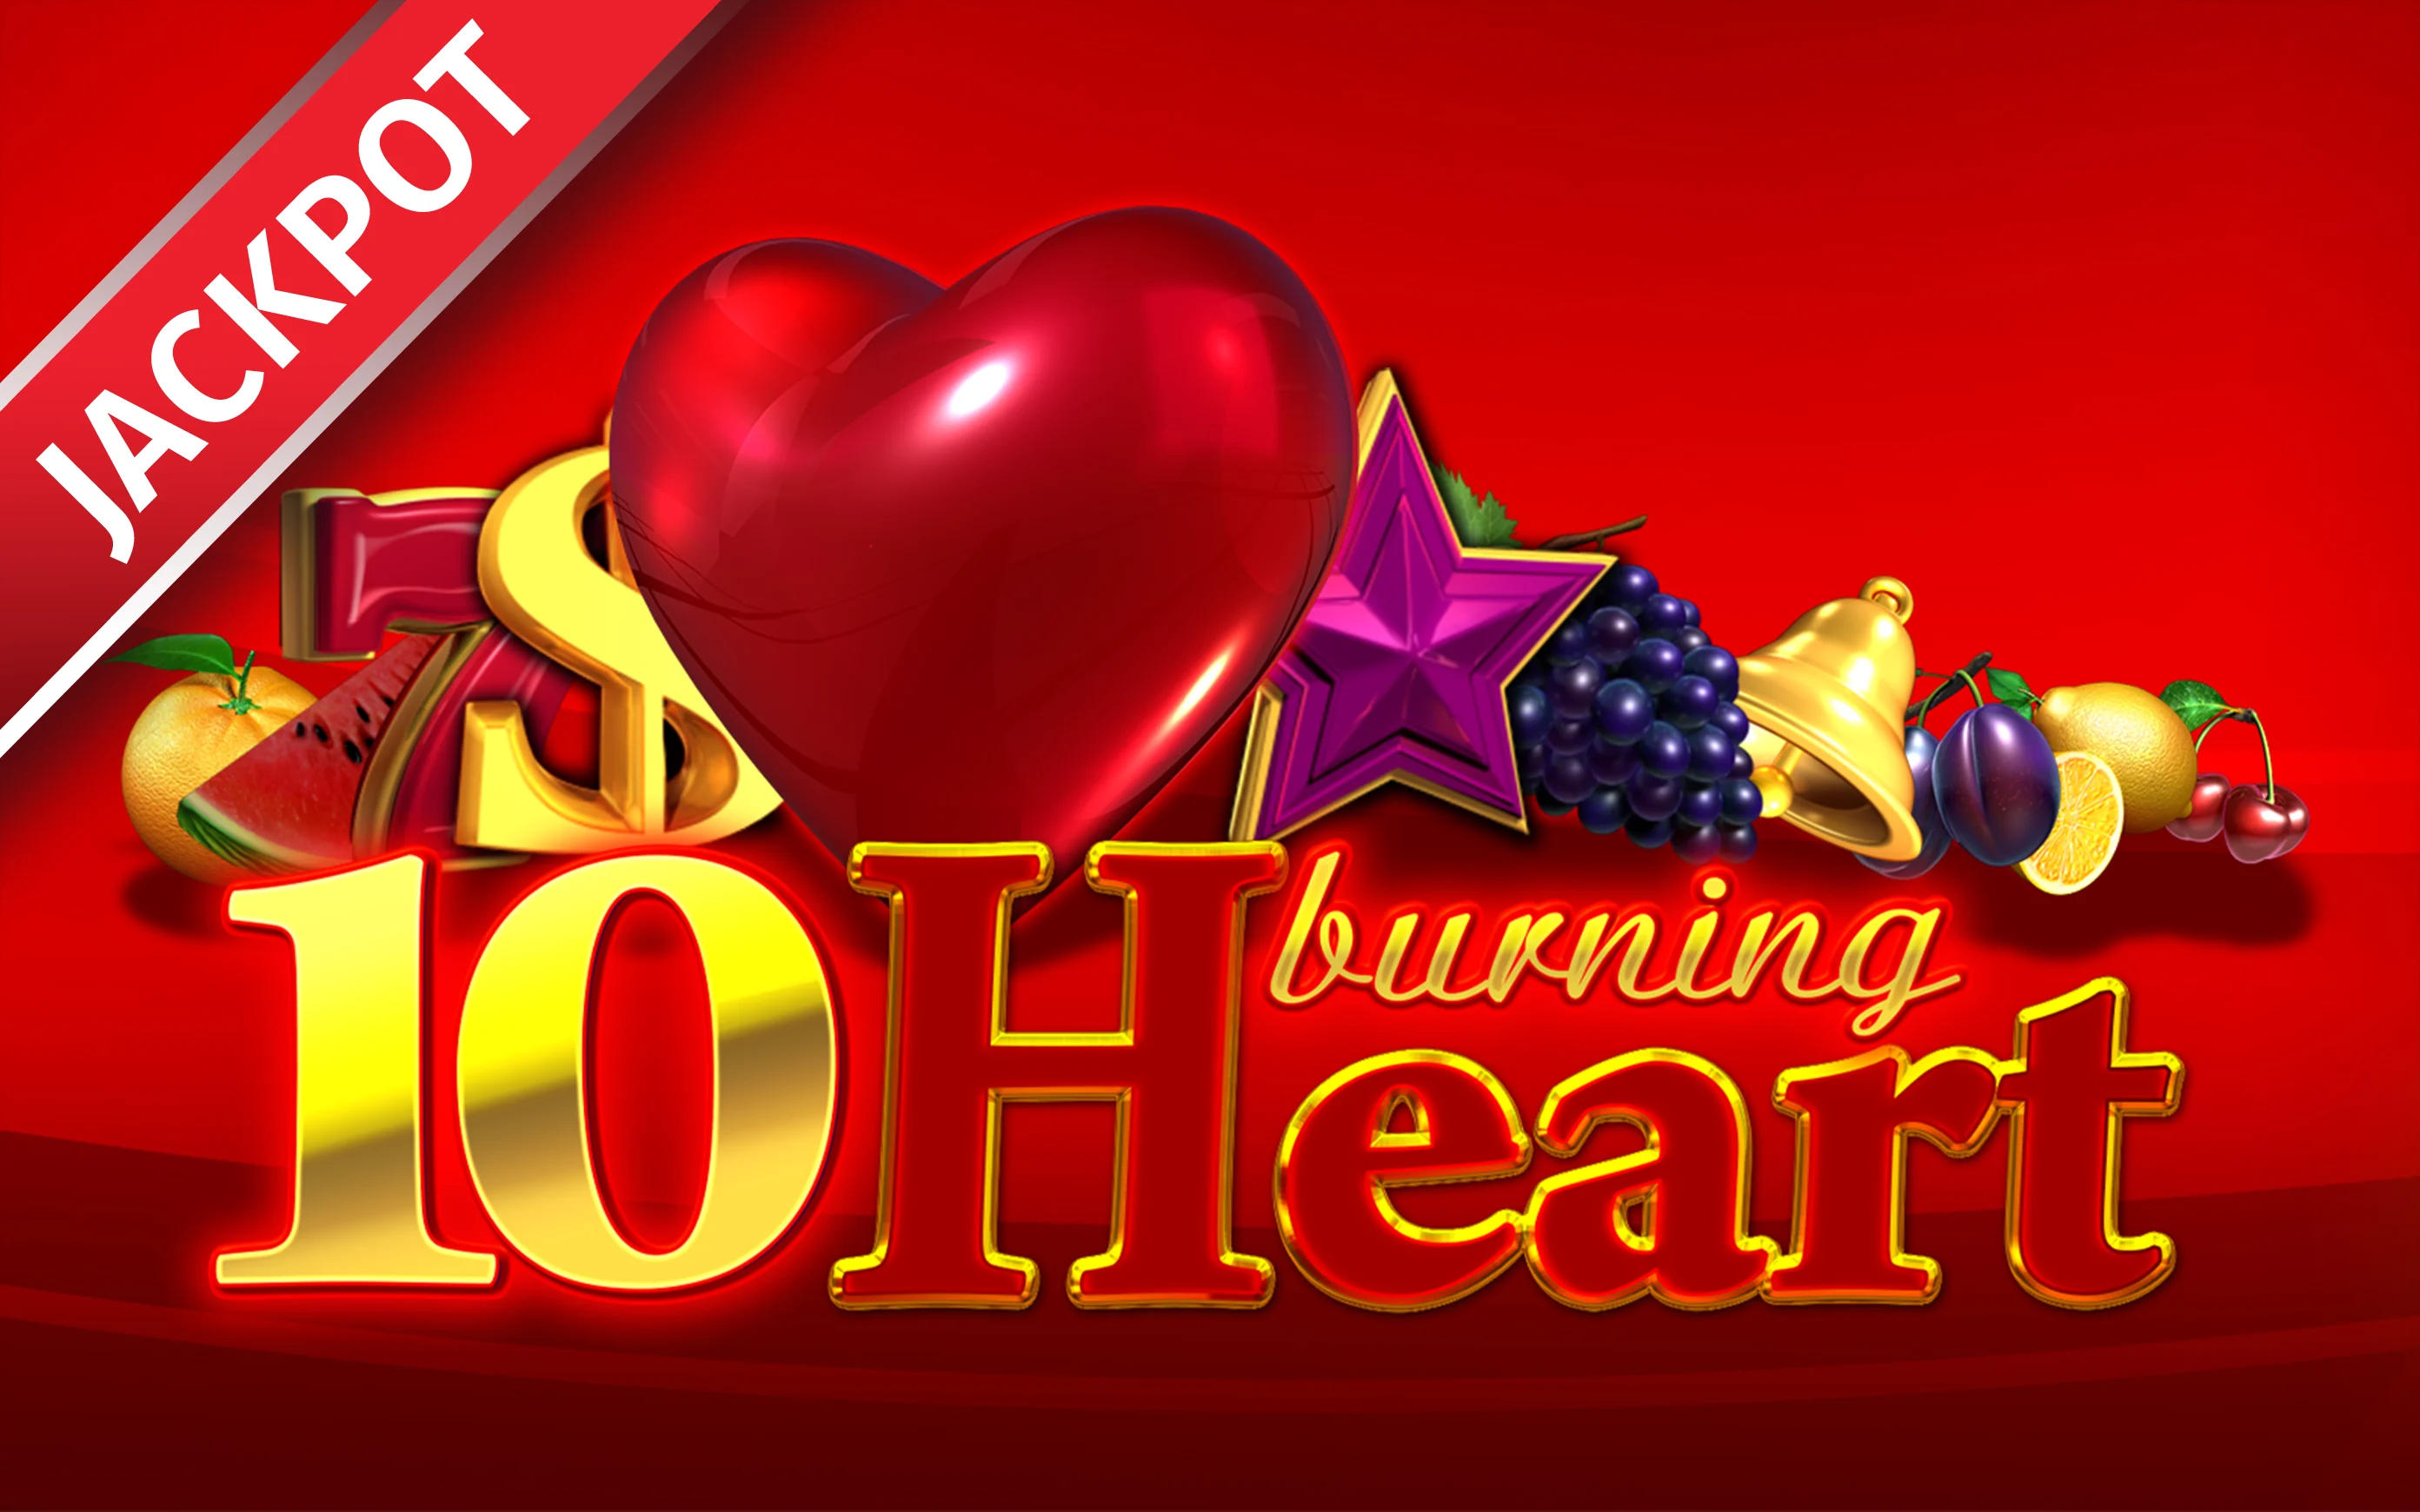 Chơi 10 Burning heart trên sòng bạc trực tuyến Starcasino.be